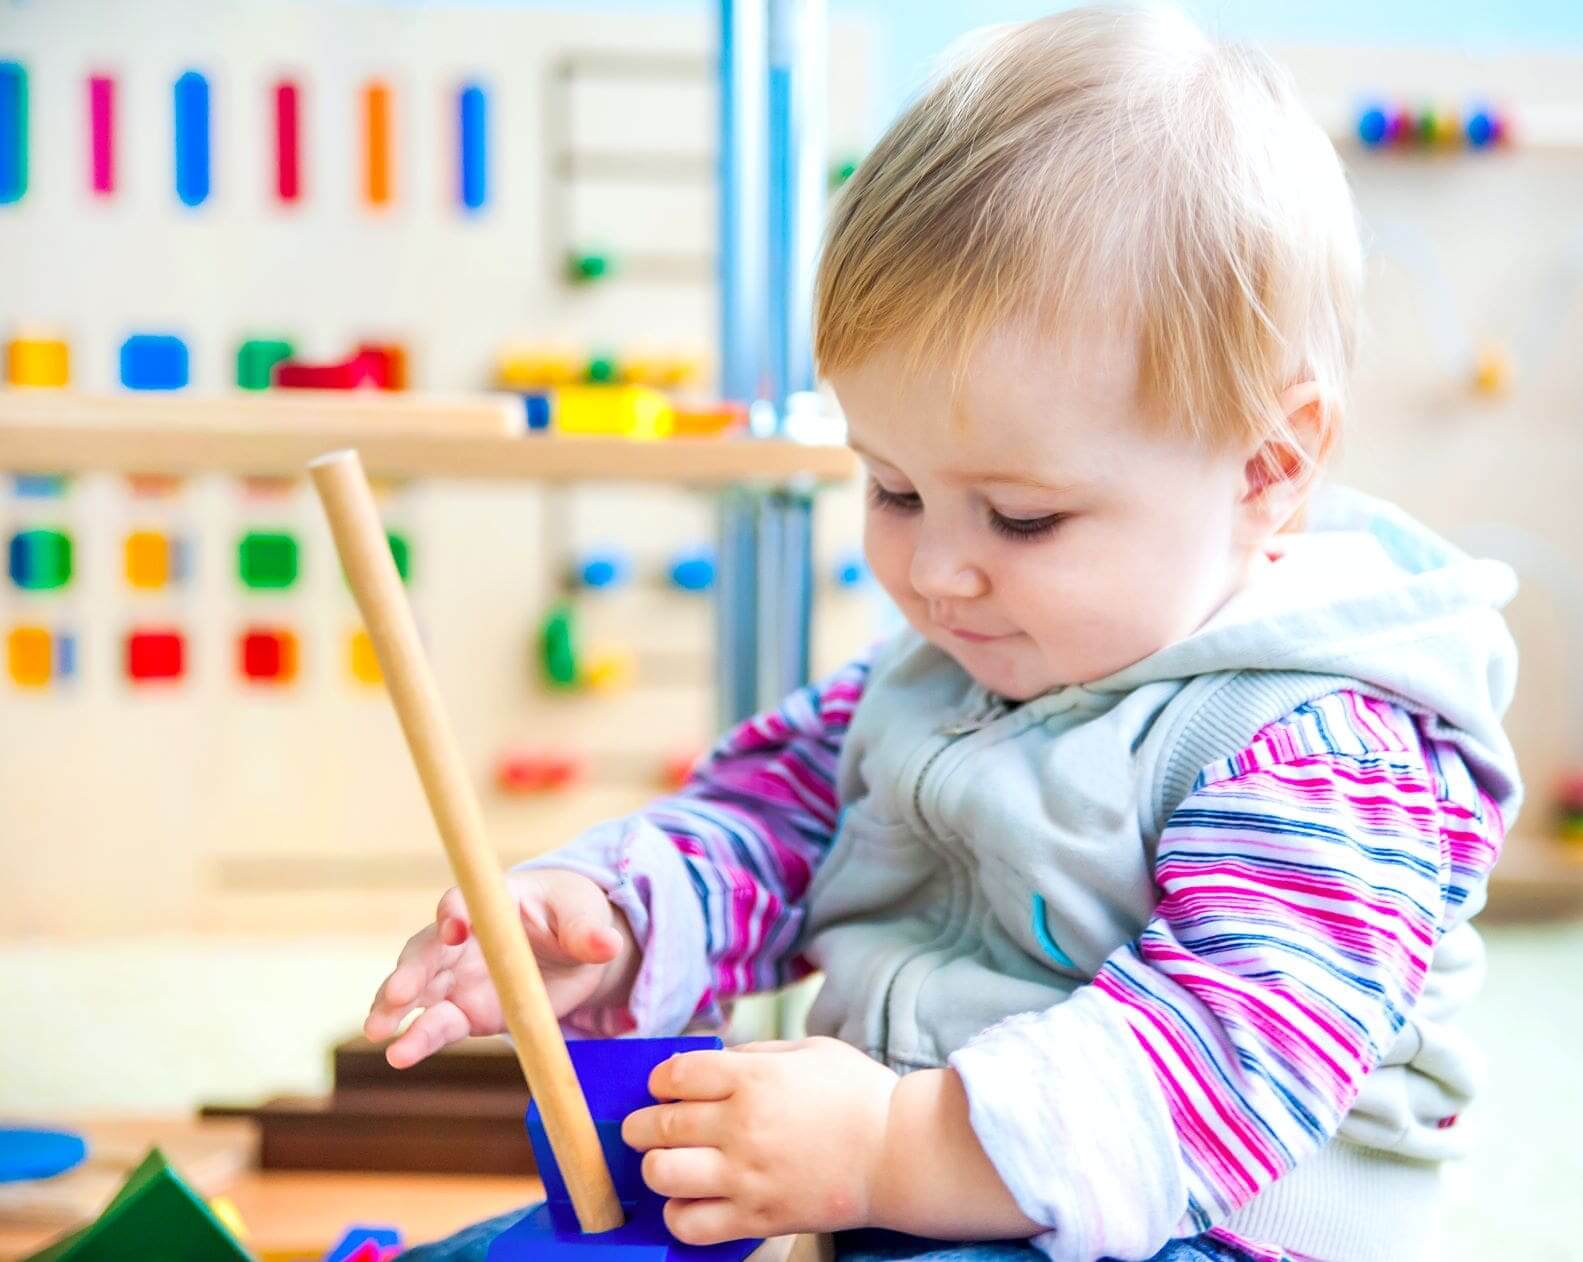 Juguetes Montessori para niños de 1 año de edad, juguetes sensoriales para  niños de 1 a 3 años, con la emoción añadida de los juguetes Montessori para